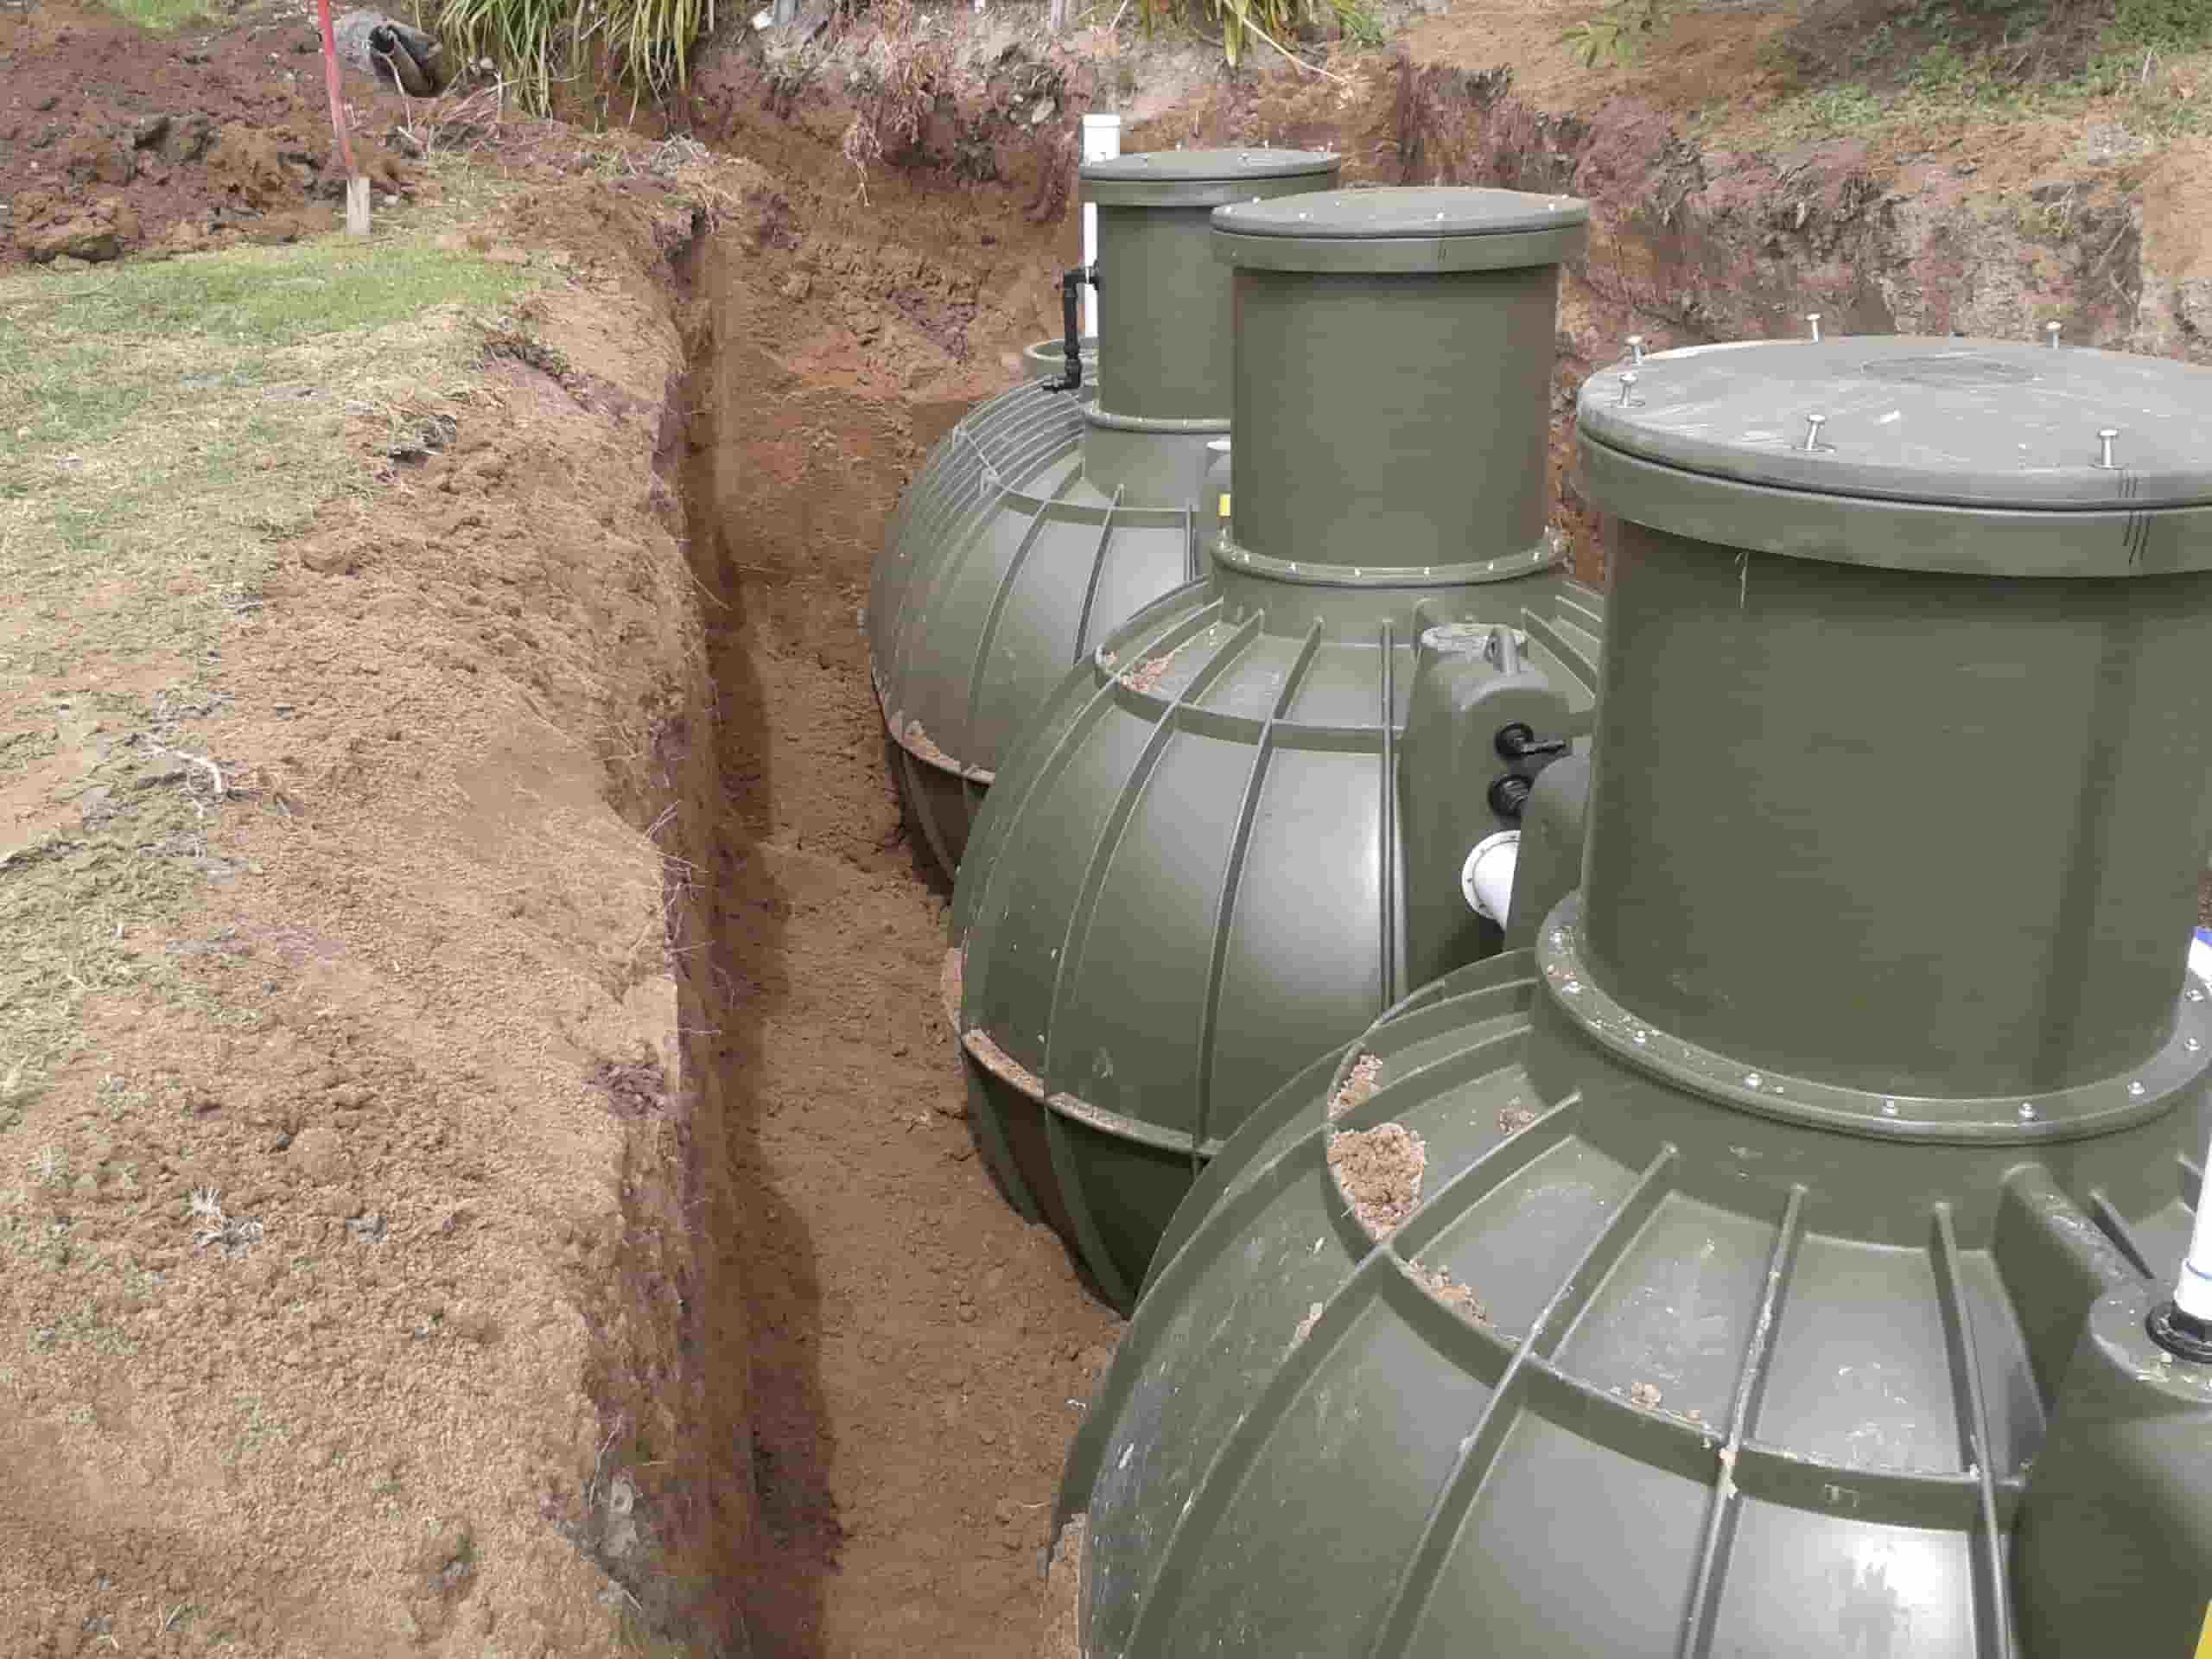 Devan Integra wastewater treatment system tanks in ground